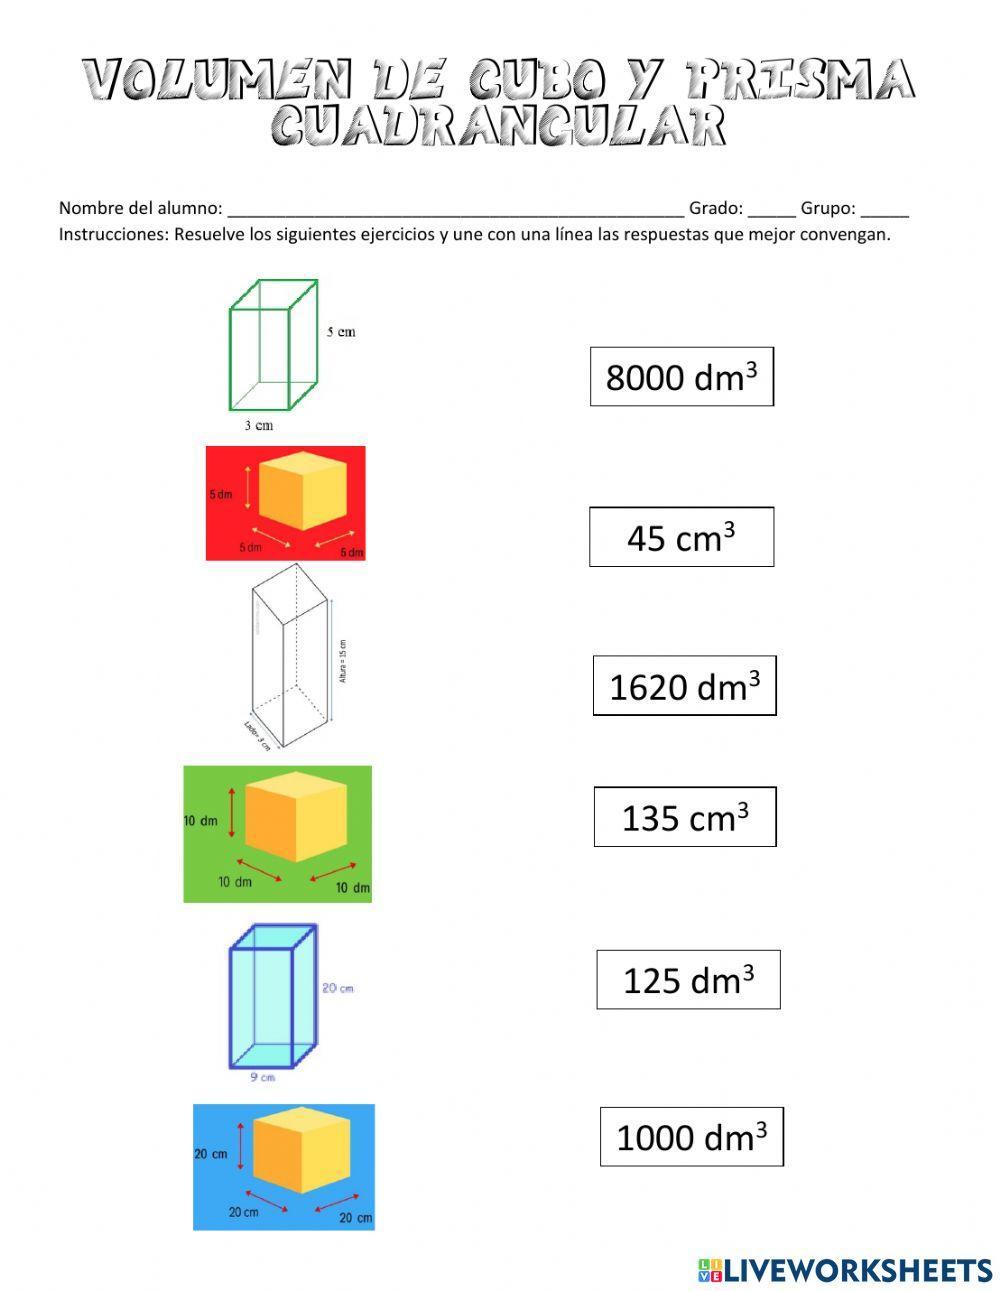 Volumen de cubo y prisma cuadrangular